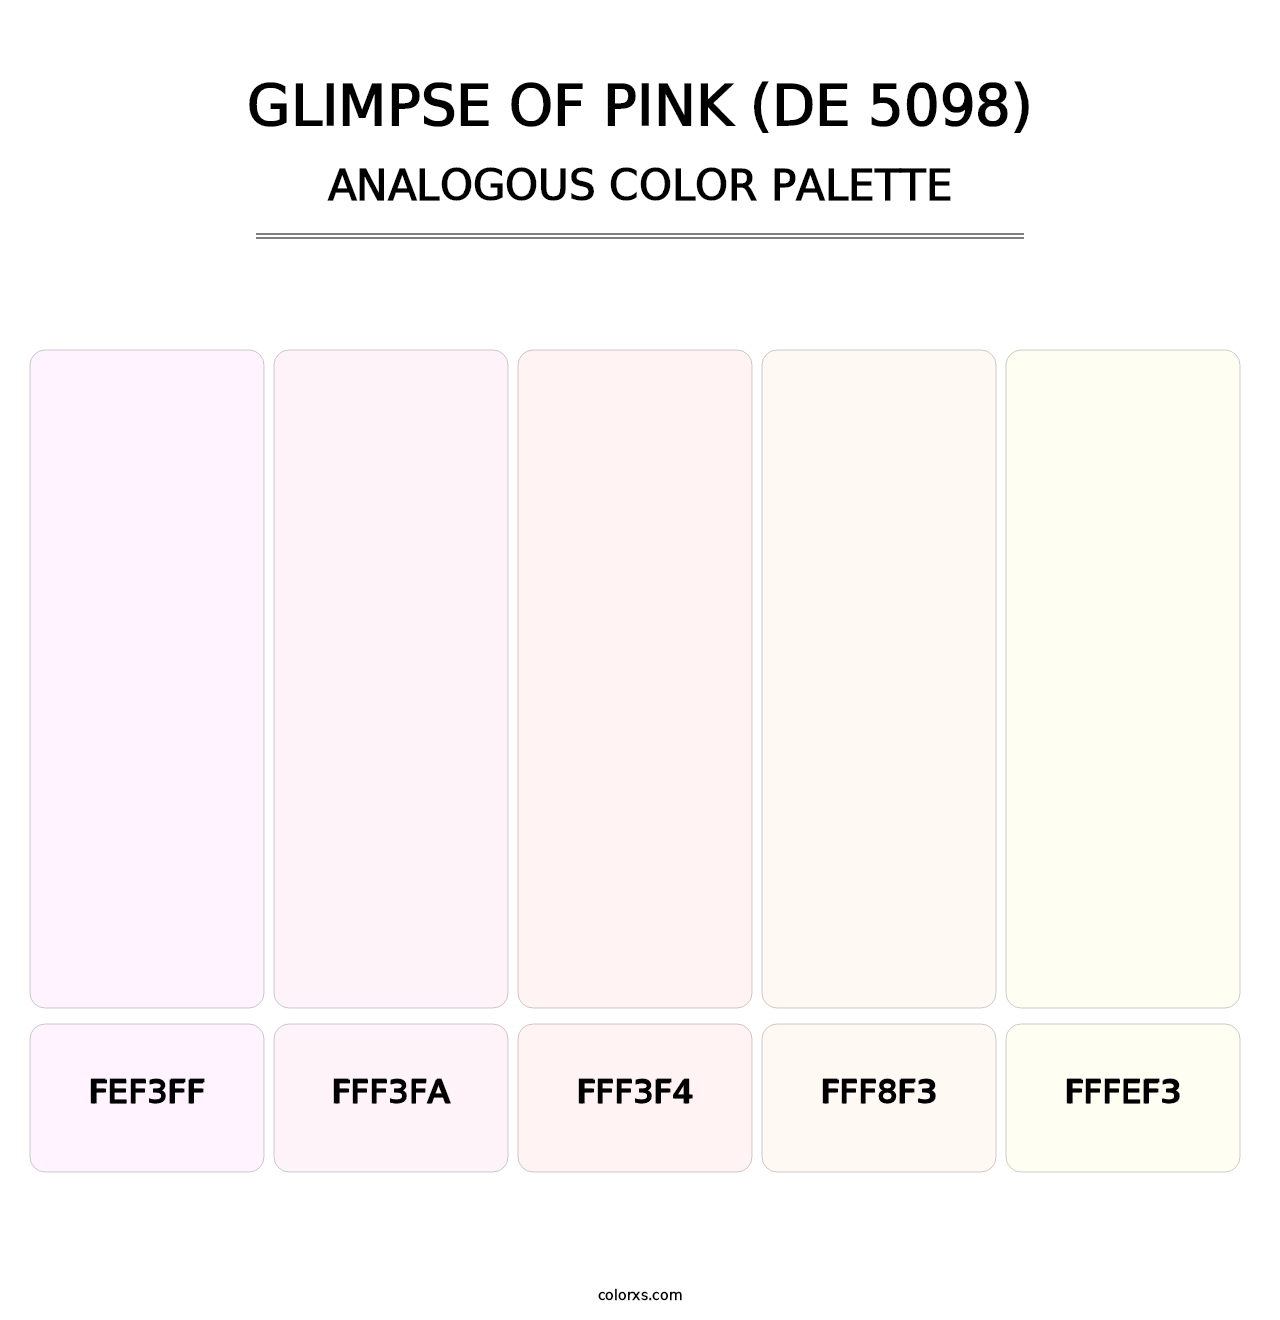 Glimpse of Pink (DE 5098) - Analogous Color Palette